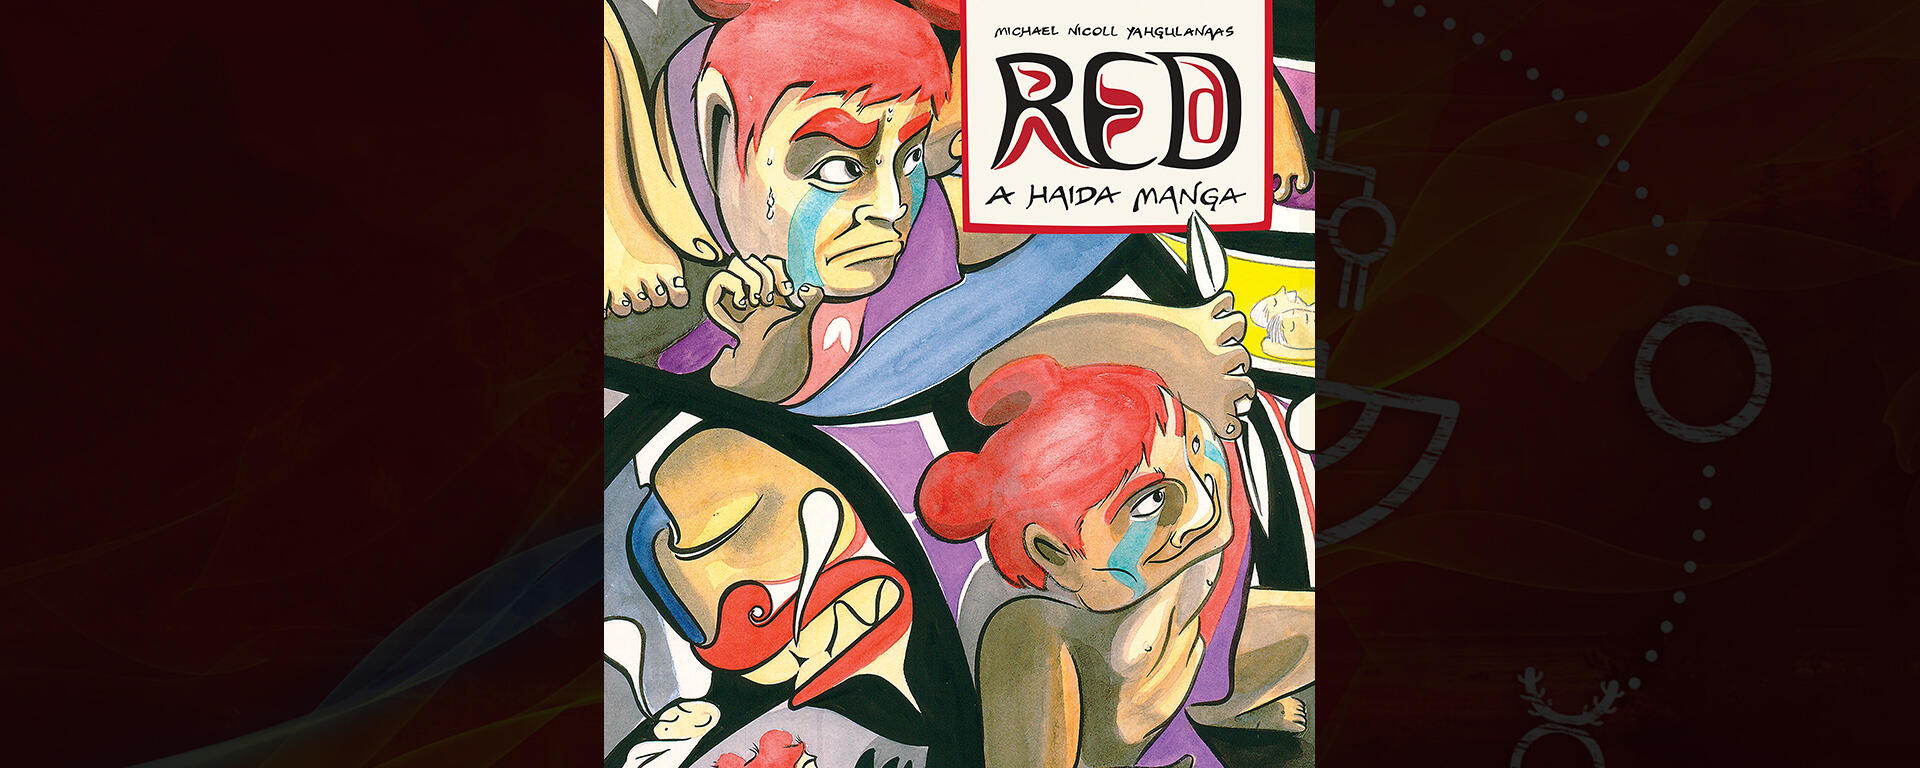 Red: A Haida Manga 